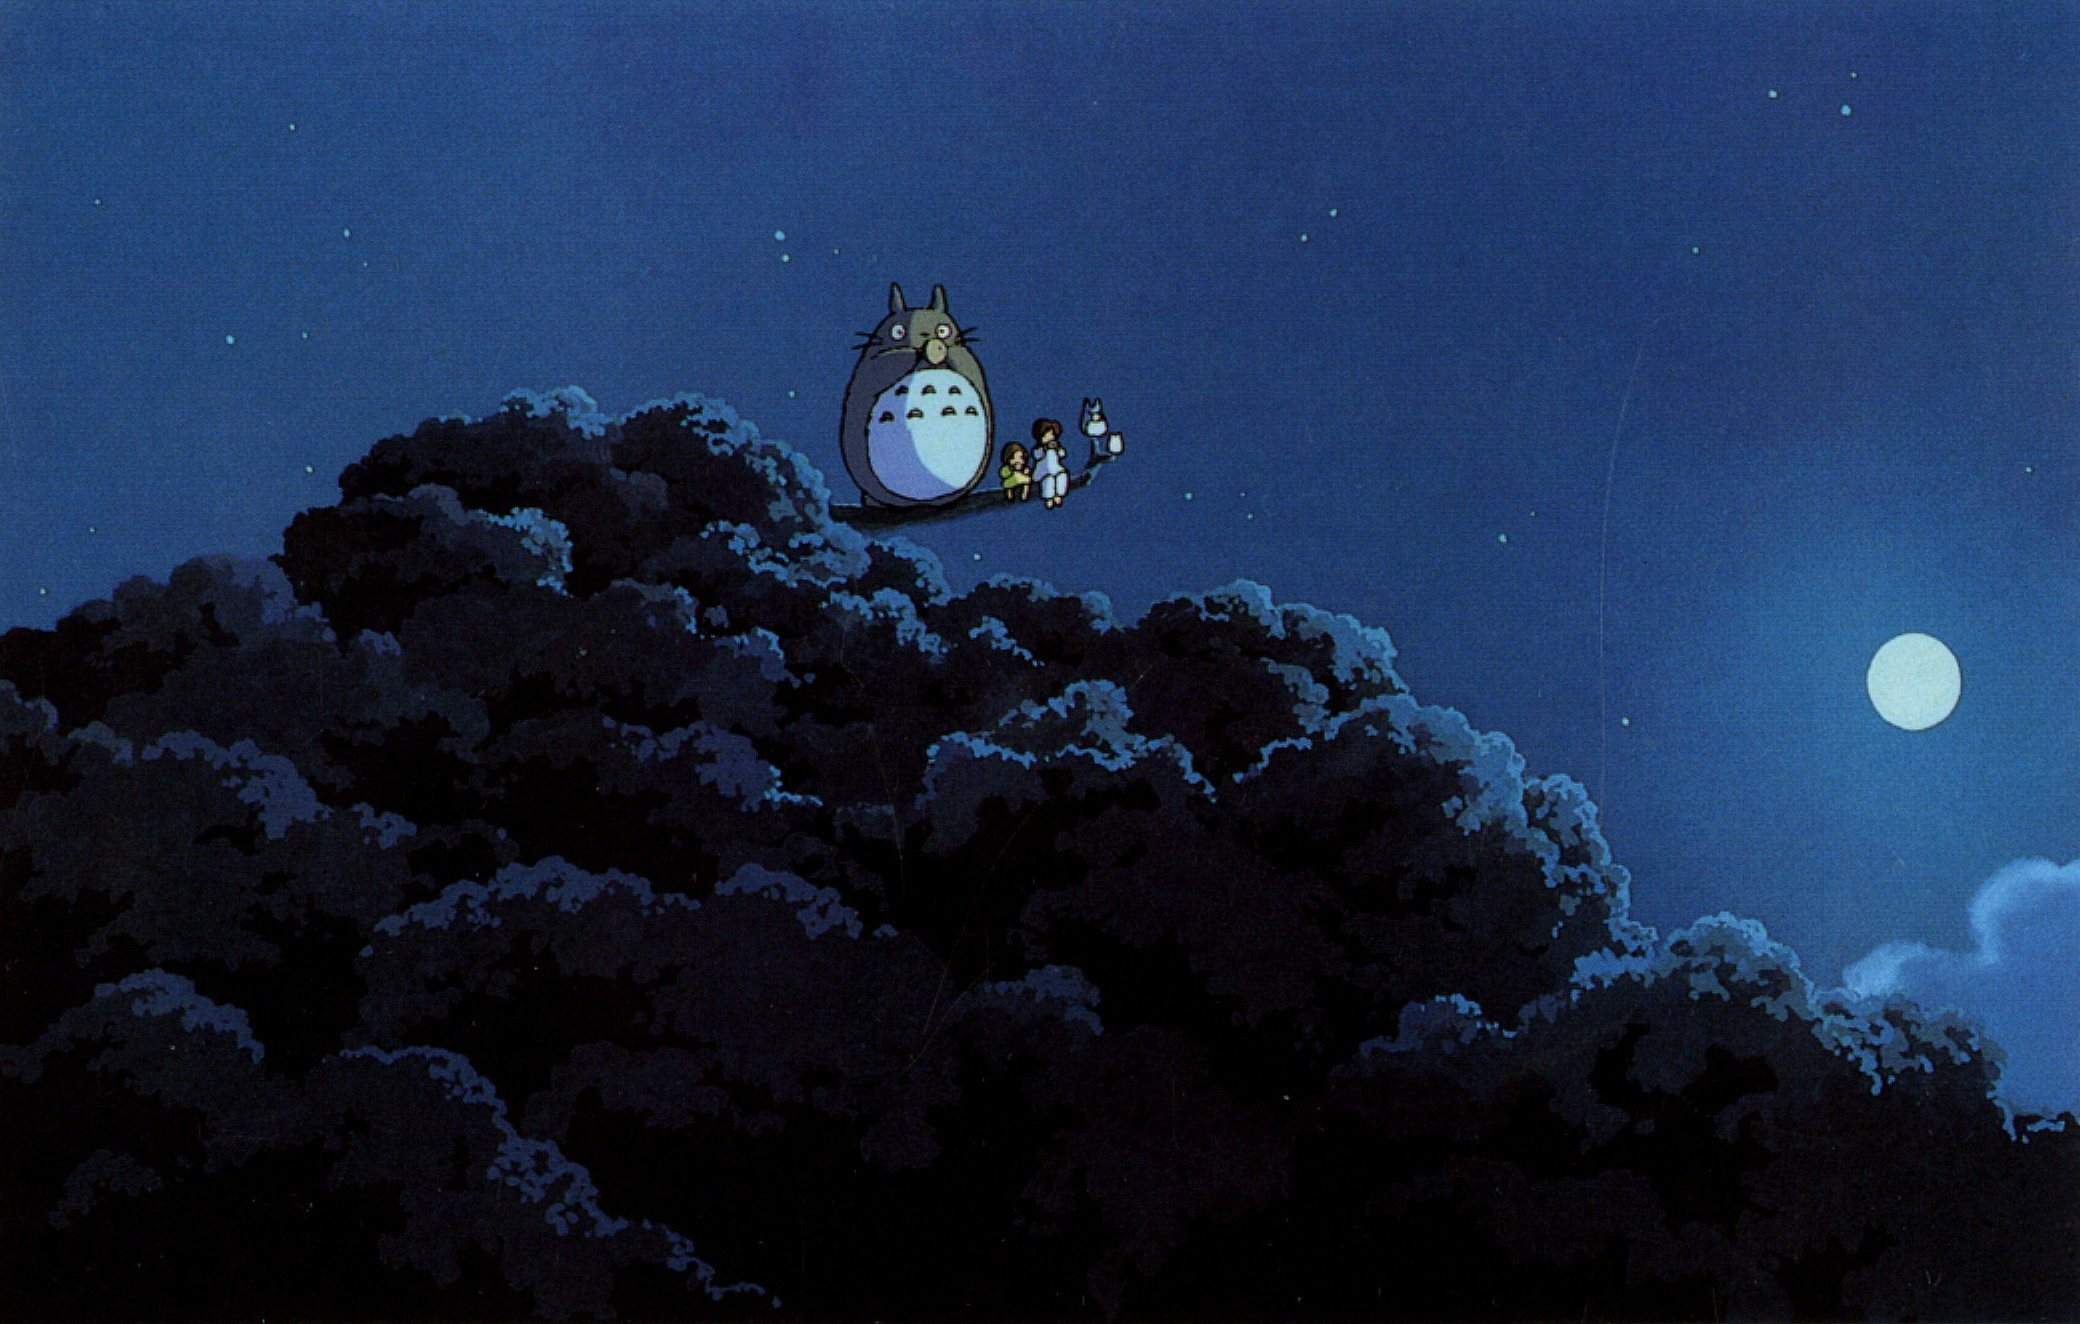 Anime 2080x1324 Hayao Miyazaki My Neighbor Totoro Totoro anime Moon trees outdoors